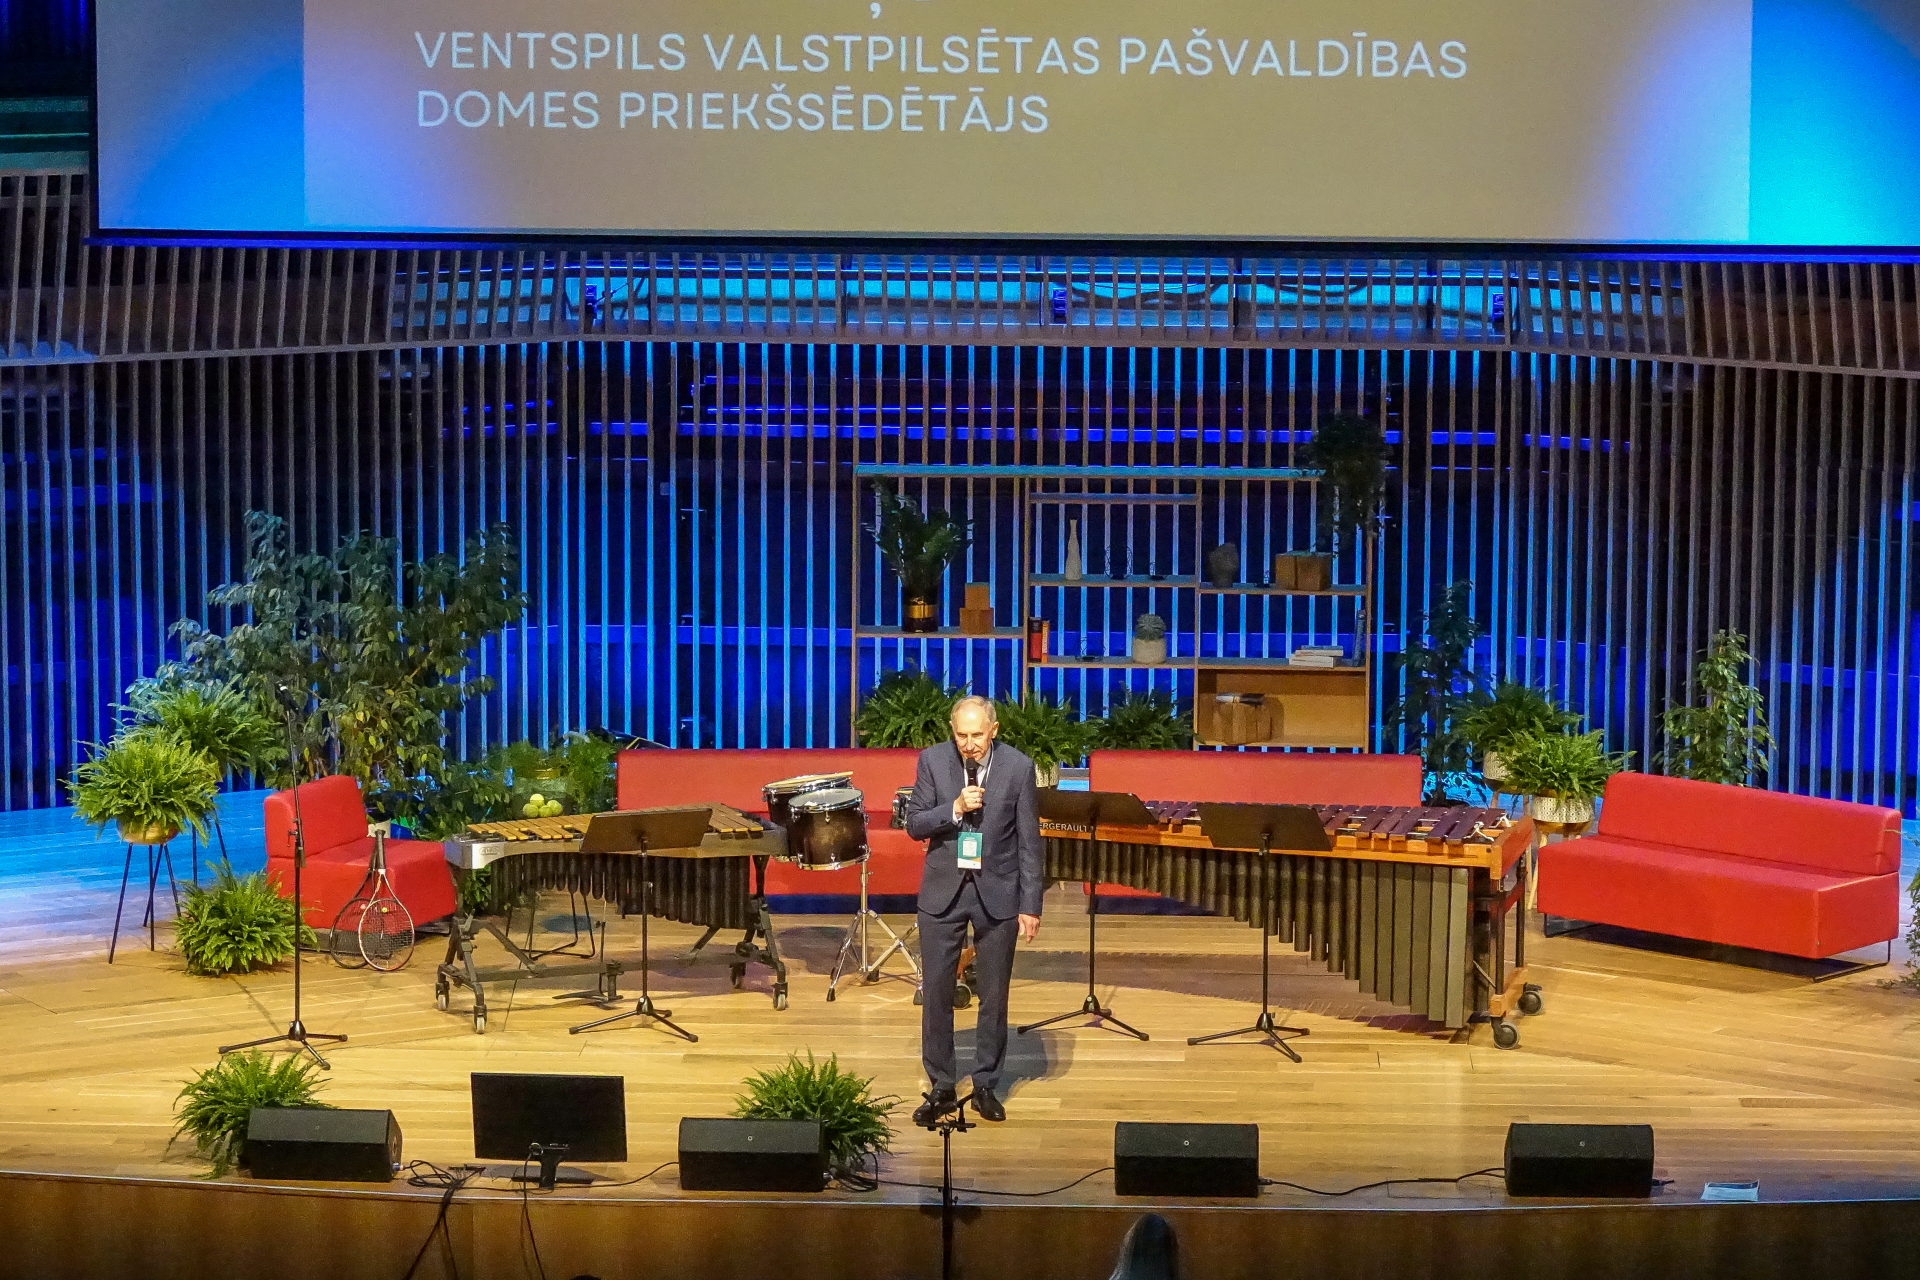 Kurzemes biznesa forumā uz skatuves mikrofonā runā Ventspils valstspilsētas domes priekšsēdētājs Jānis Vītoliņš.